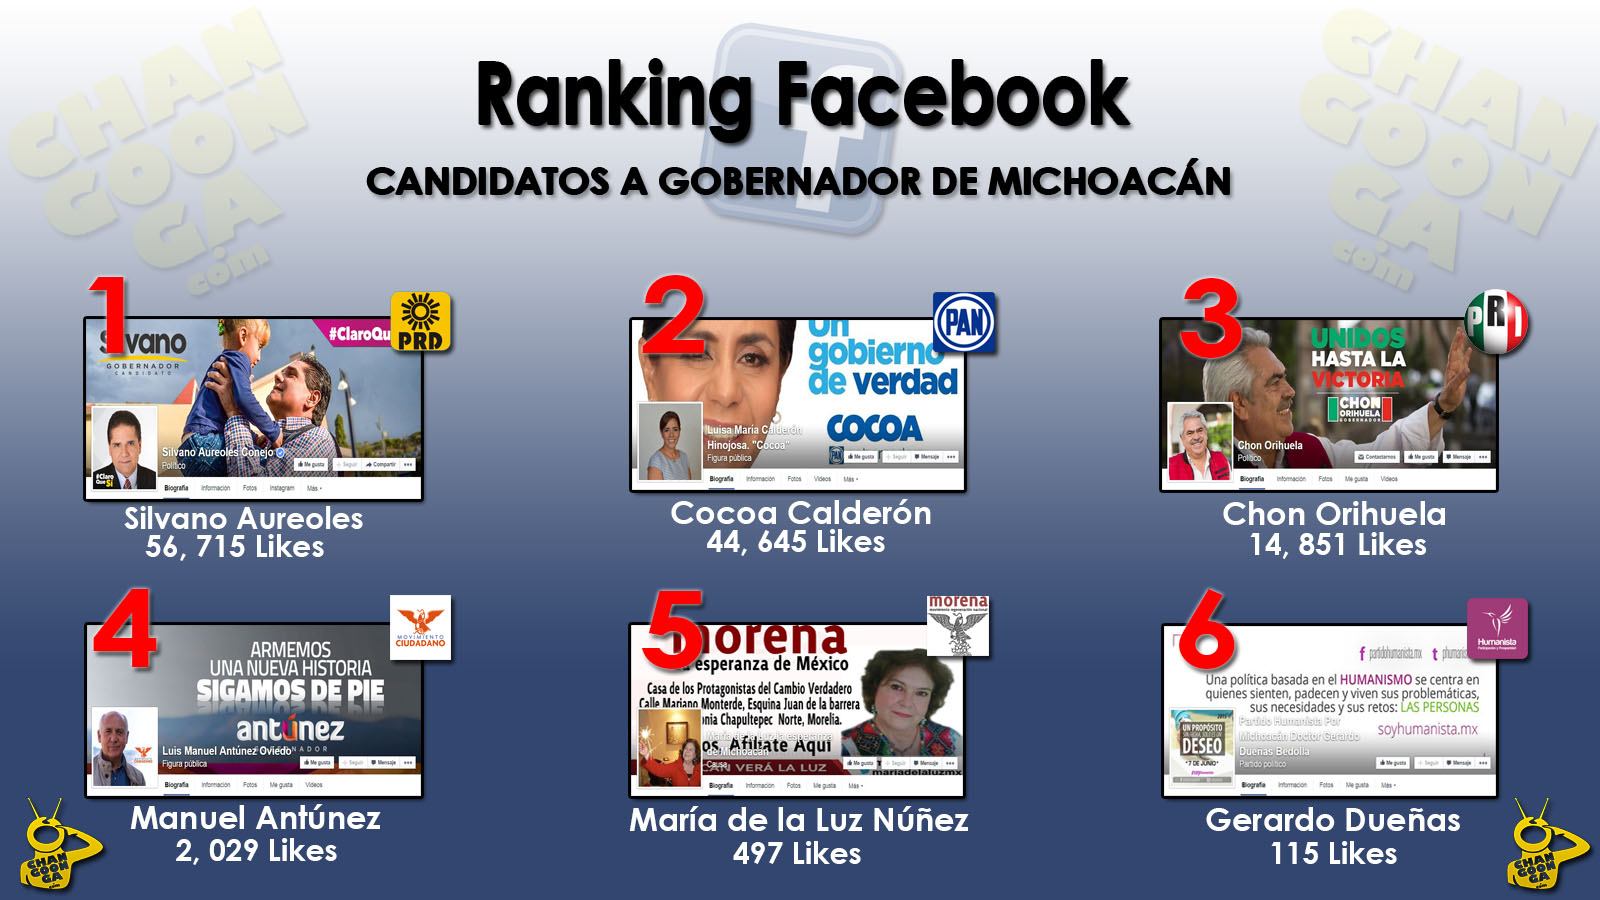 Ranking Facebook Candidatos A Gobernador Michoacán 5 abrirl 2015